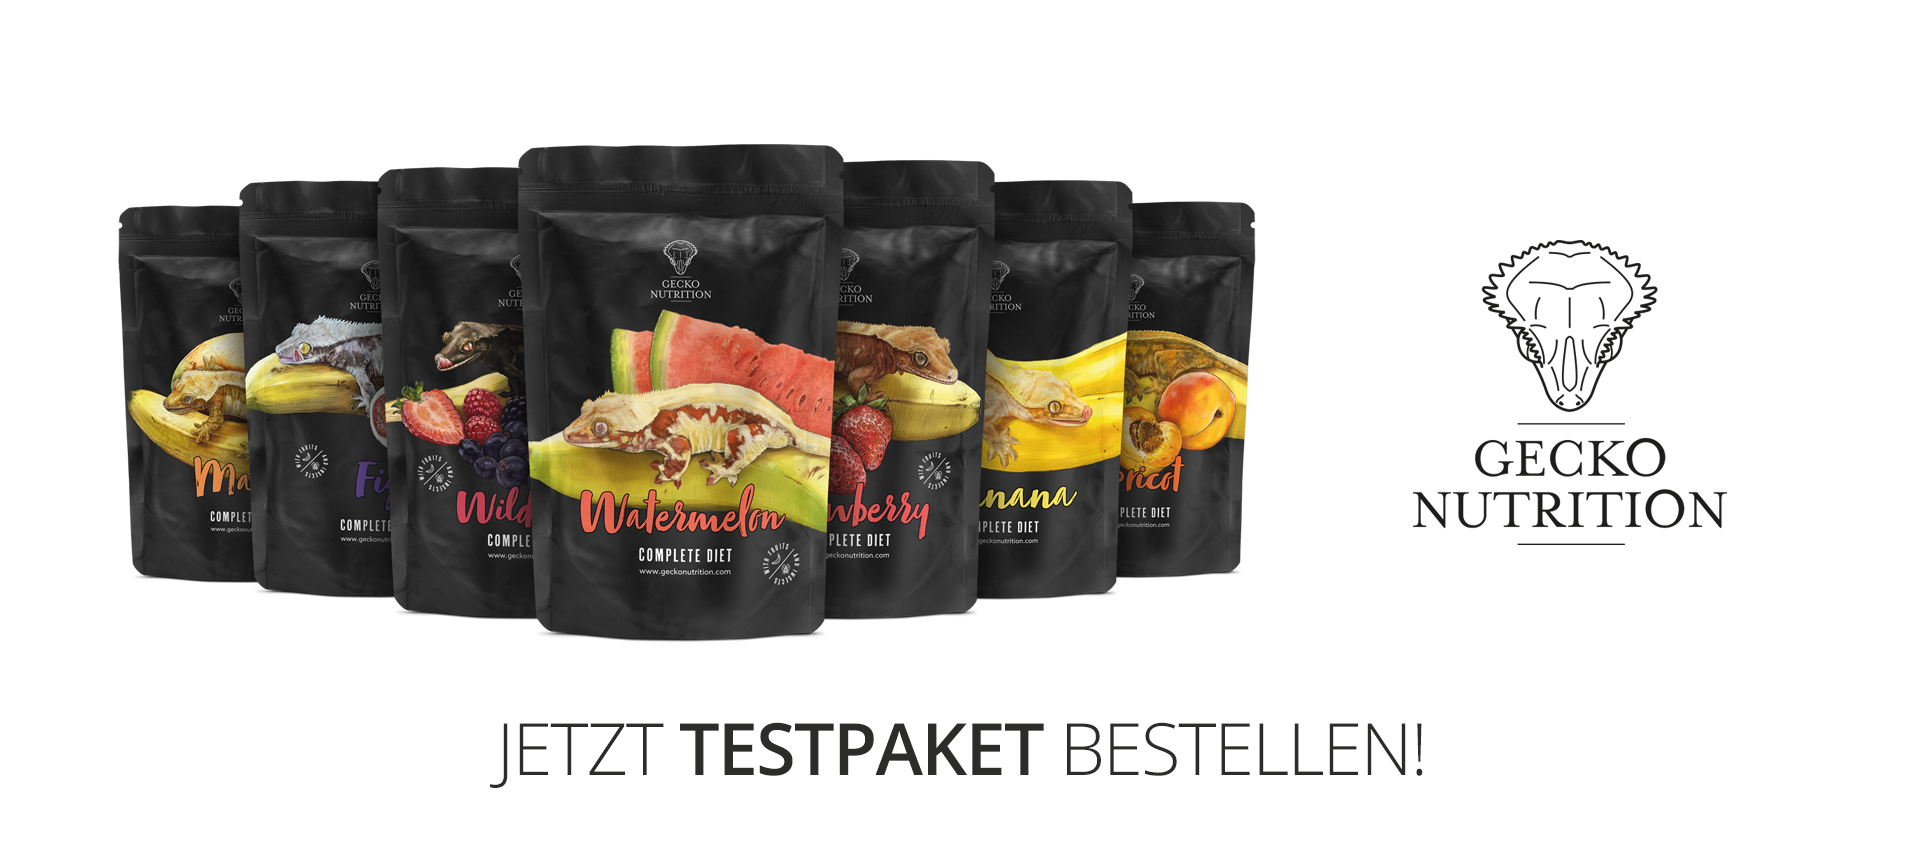 https://www.crestedgeckodiet.de/gecko-nutrition/gecko-nutrition-testpaket